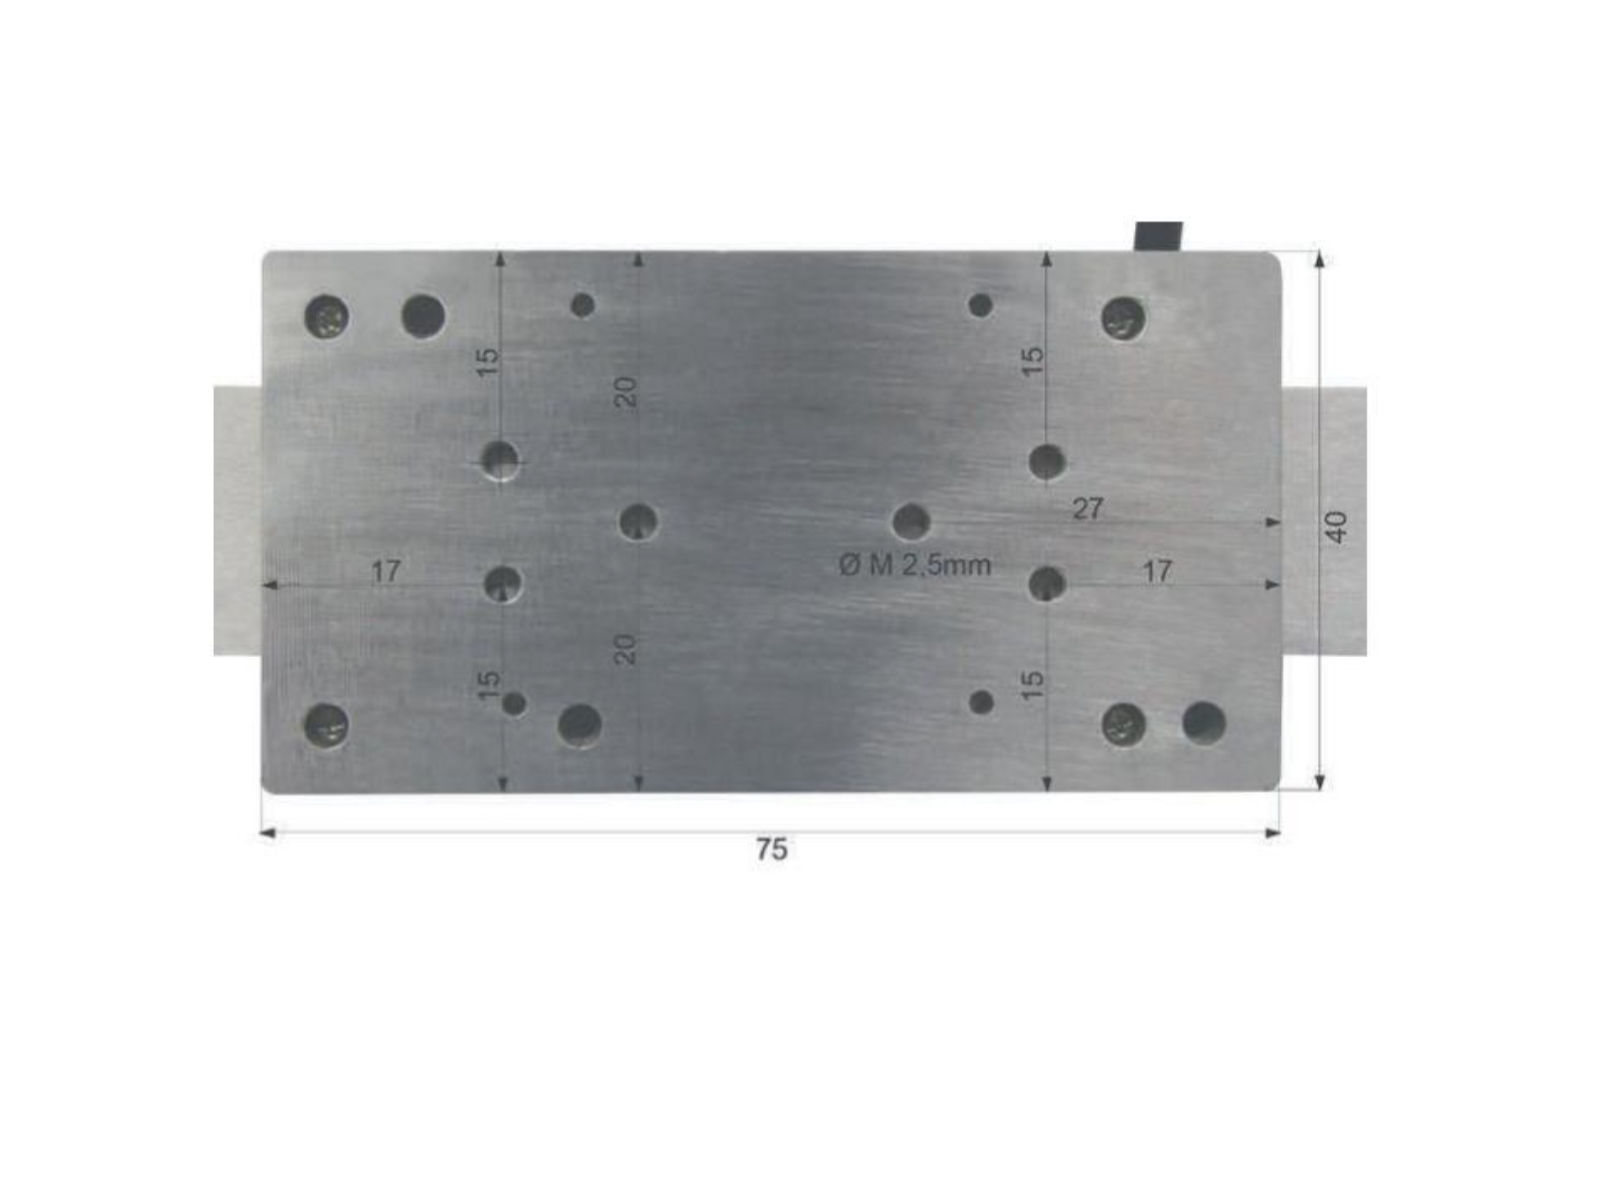 Digitaler Anbaumessschieber vertikal - mit Bluetooth® 200 mm / 8 inch